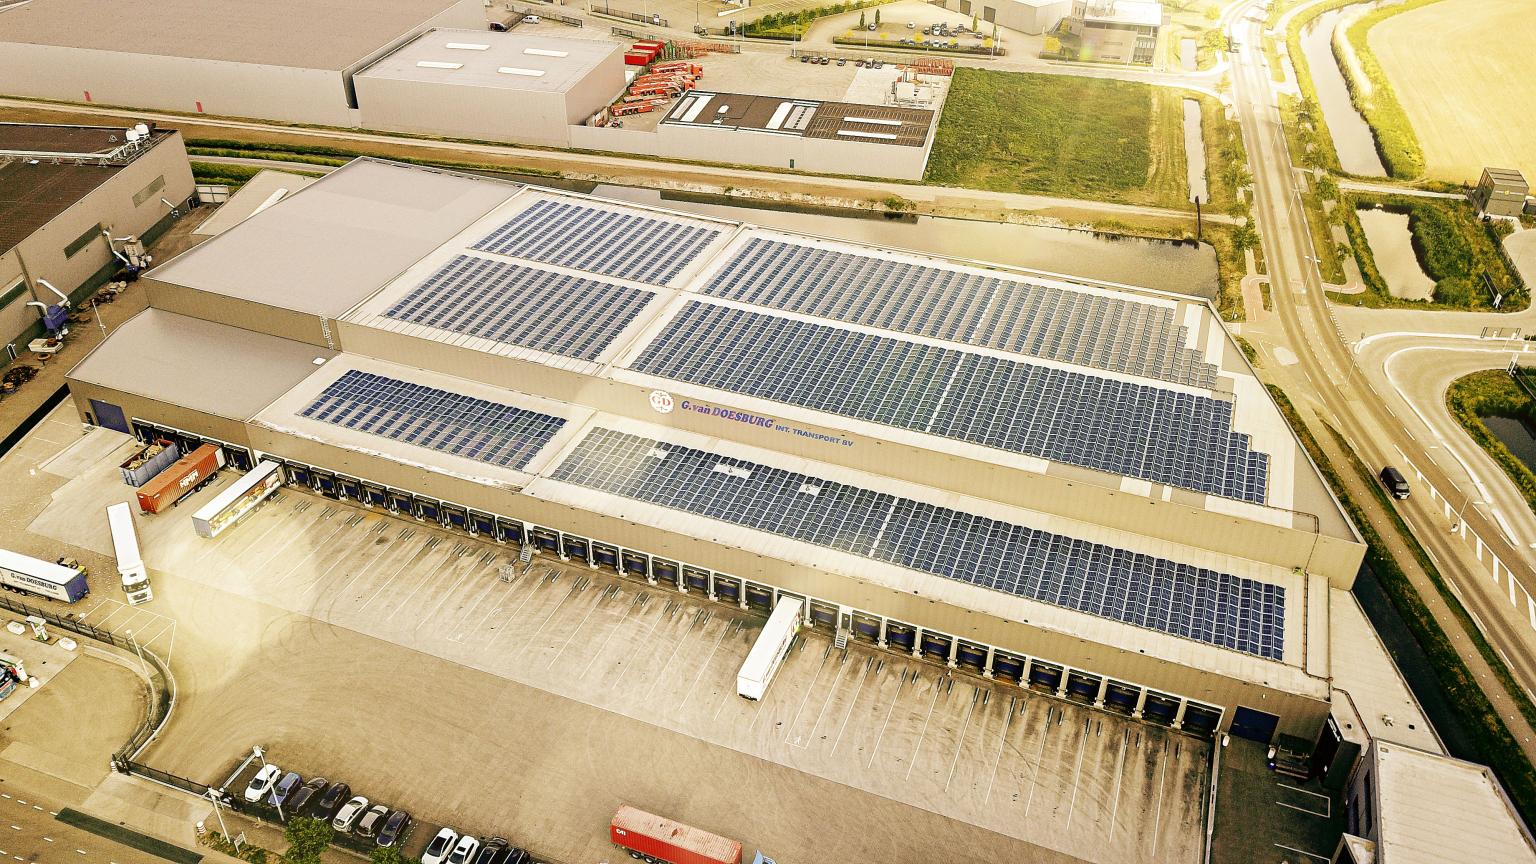 panel solar fotovoltaico en el techo GD-iTS Warehouse